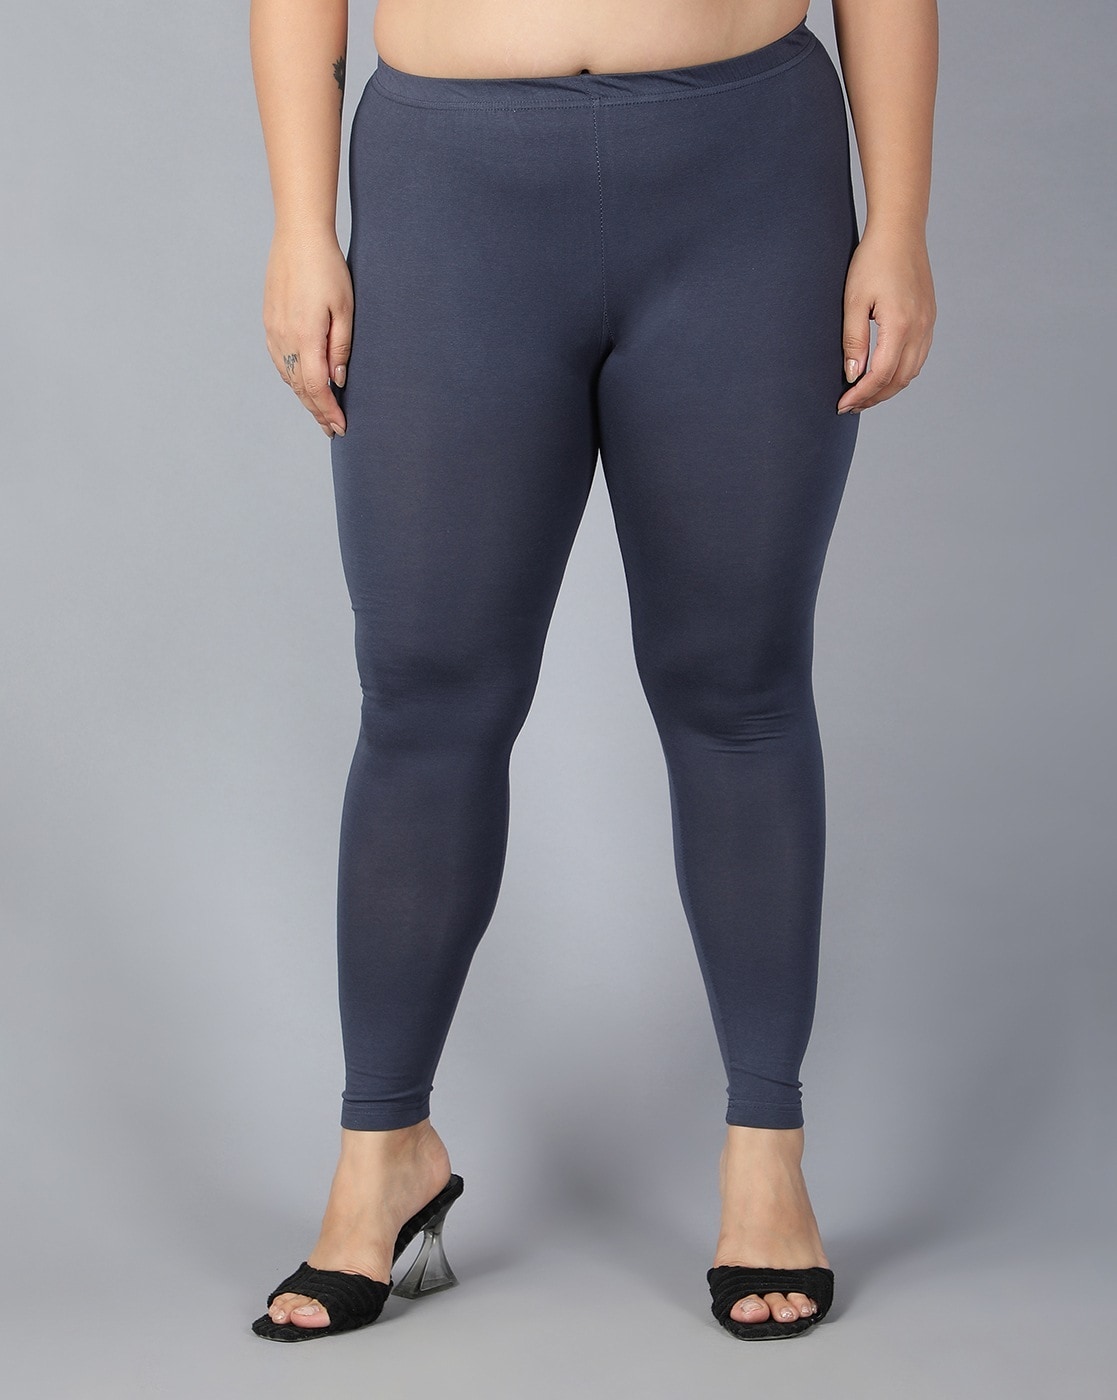 Buy Grey Leggings for Women by Plus Size Online